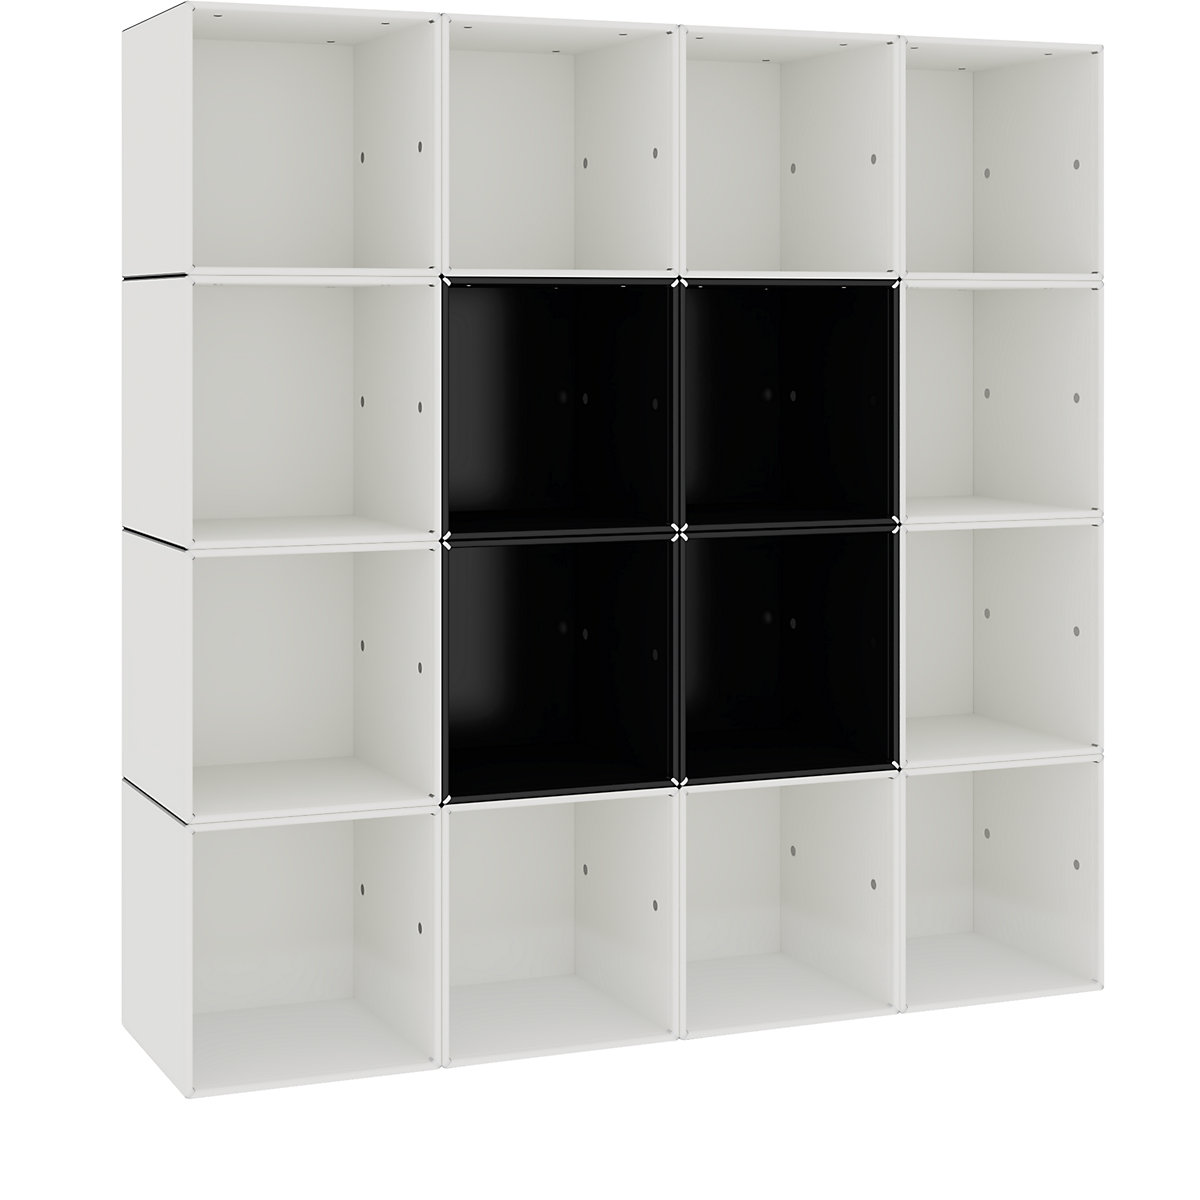 Wall shelf unit – mauser